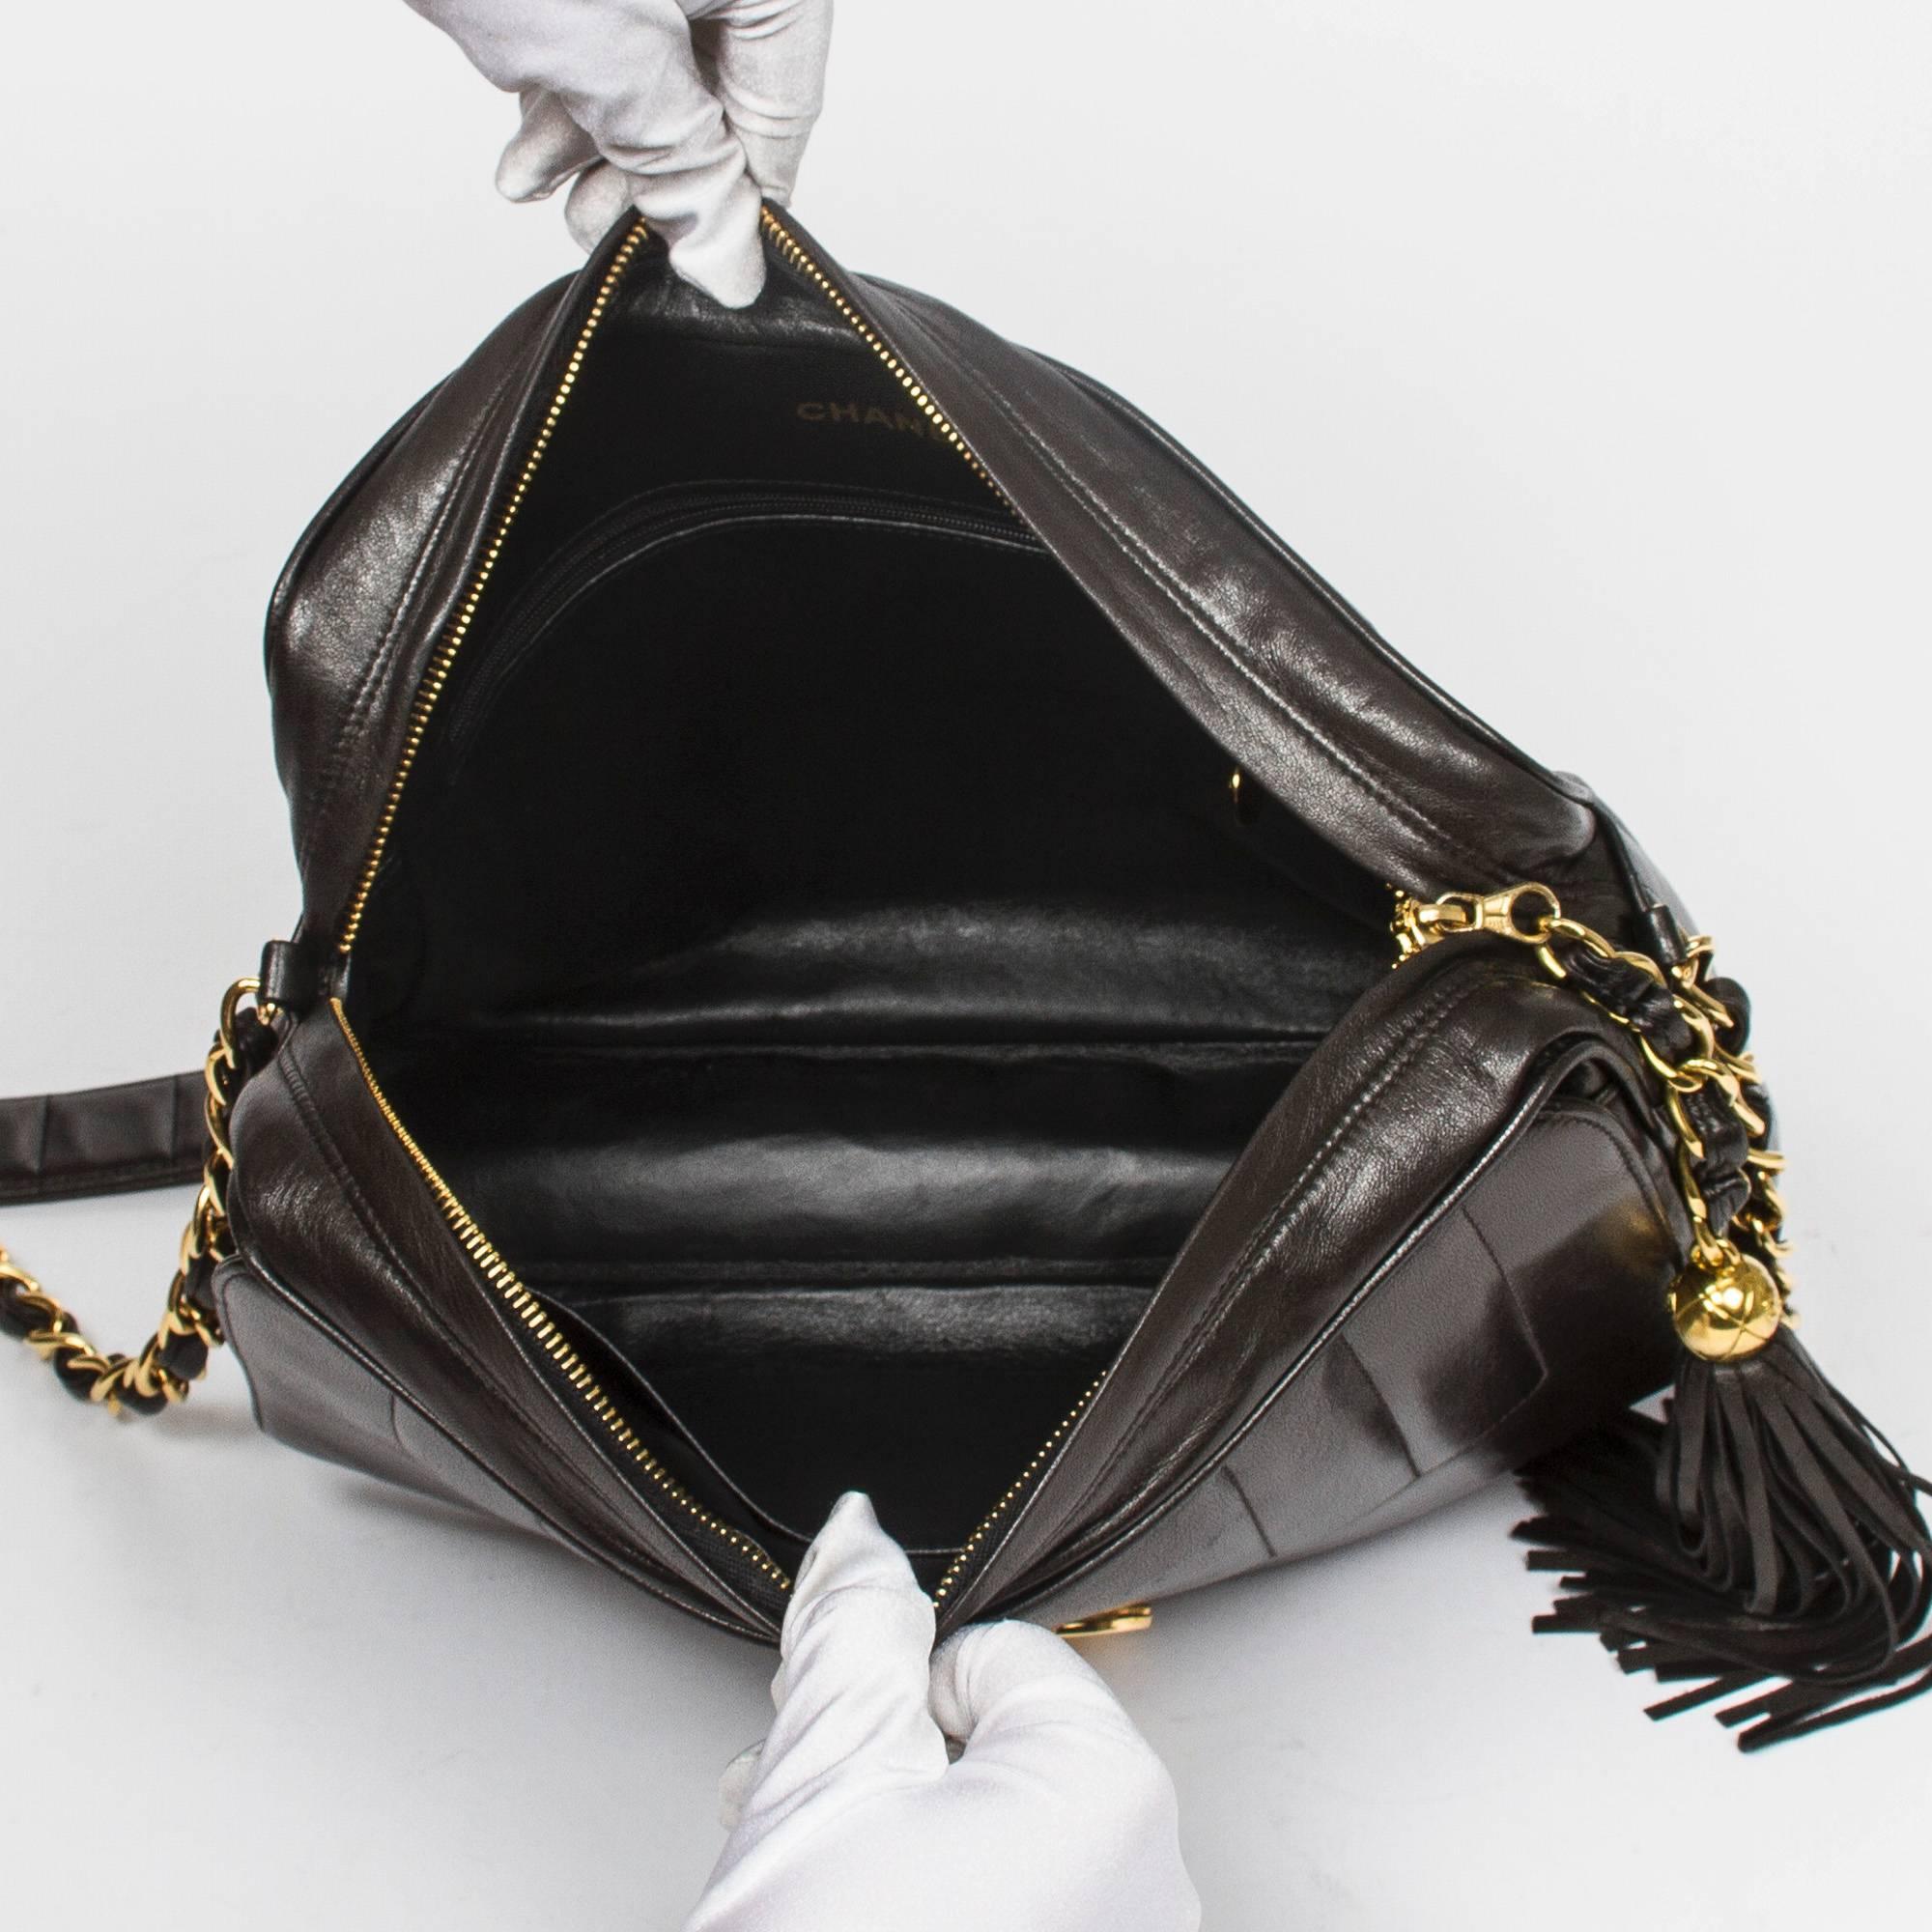 Chanel - Vintage Tassel Shoulder Bag Black Vertical Quilted Leather 2